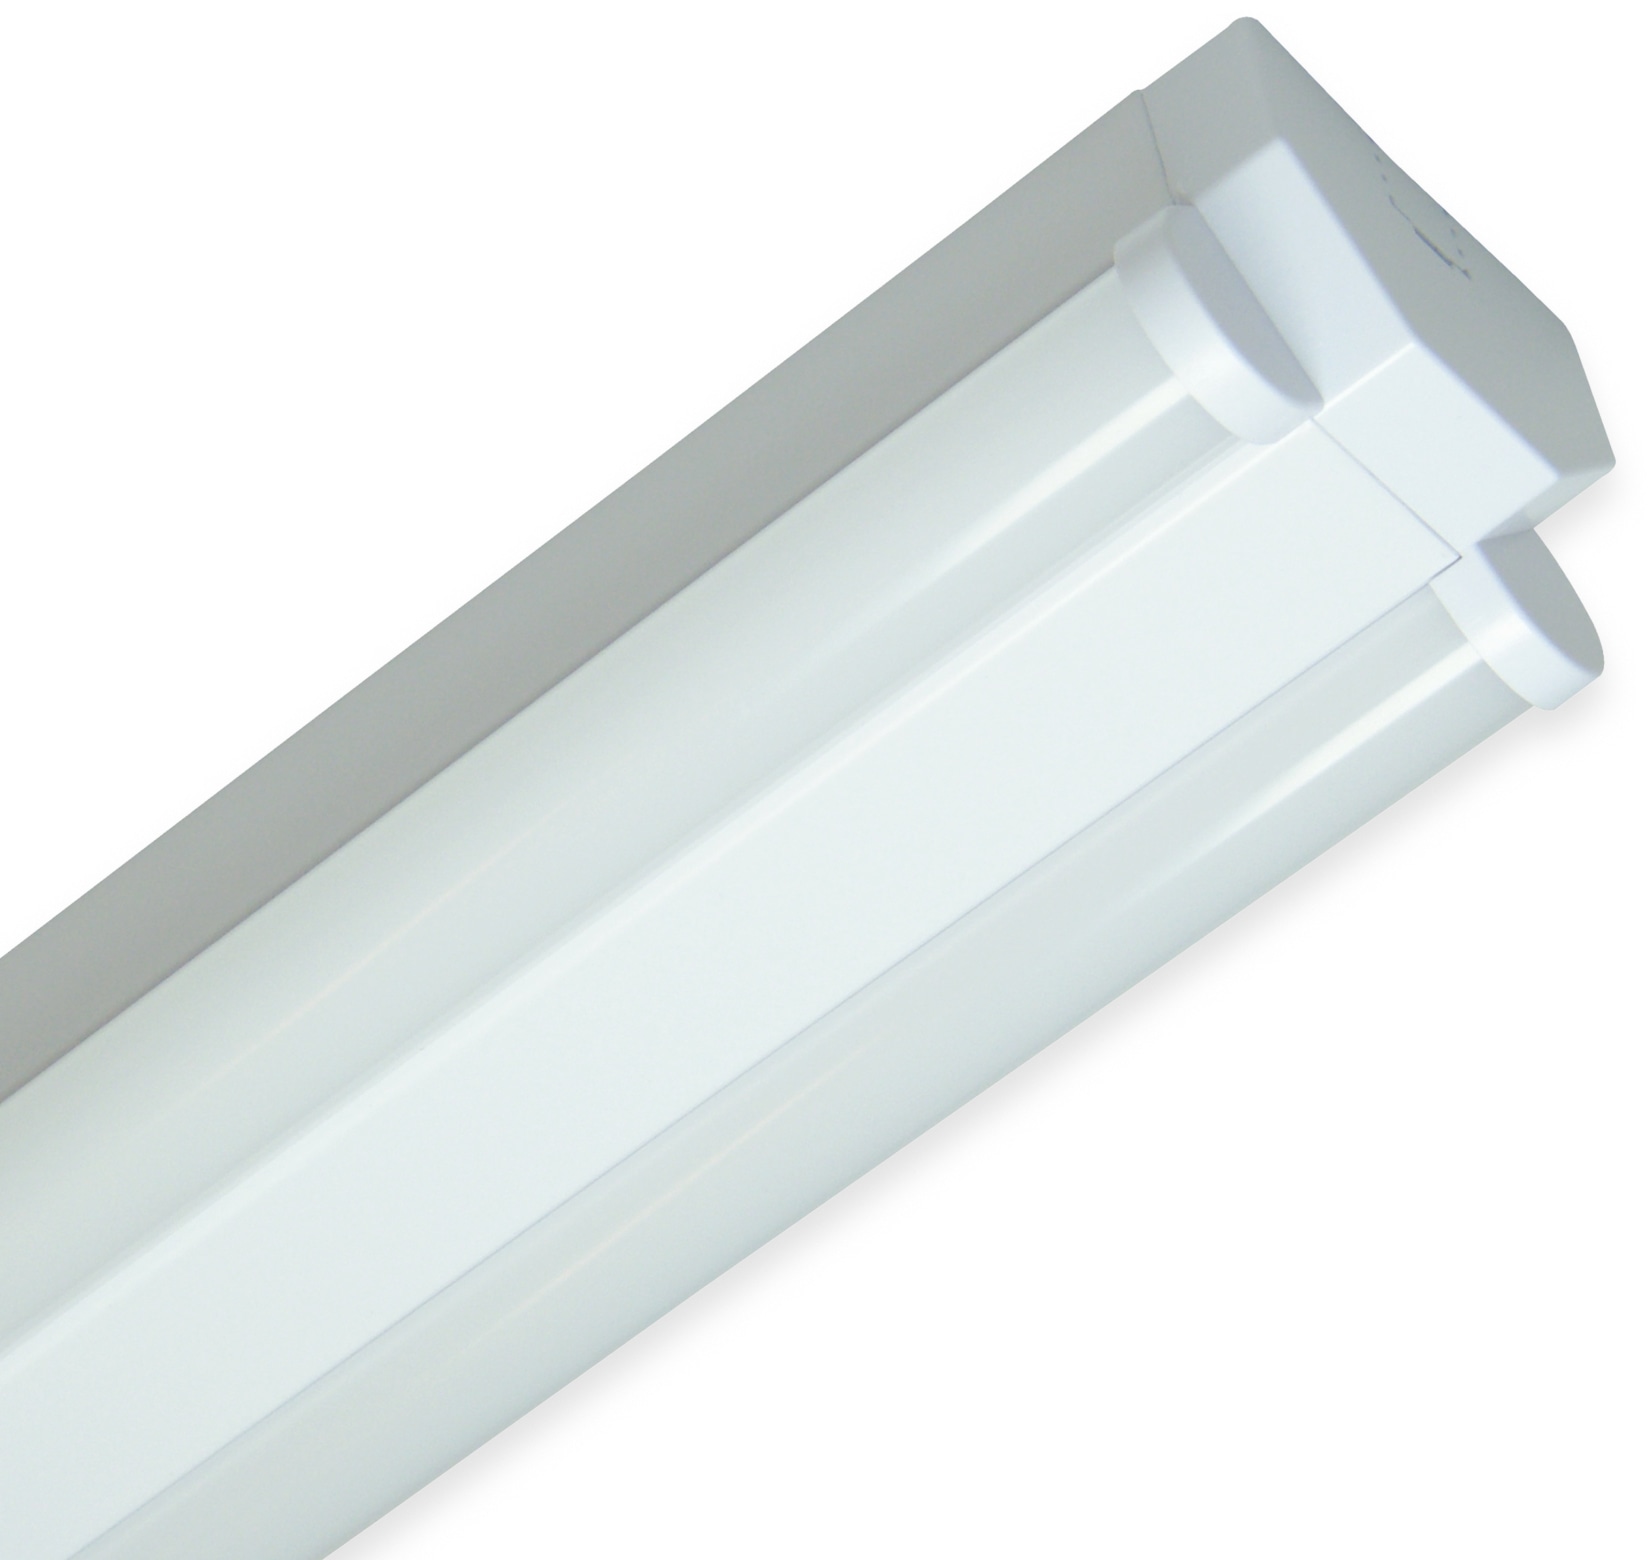 MÜLLER-LICHT LED Wand- und Deckenleuchte, 20300522, Basic 2/120, 60 W, 5000 lm, 4000 K, weiß